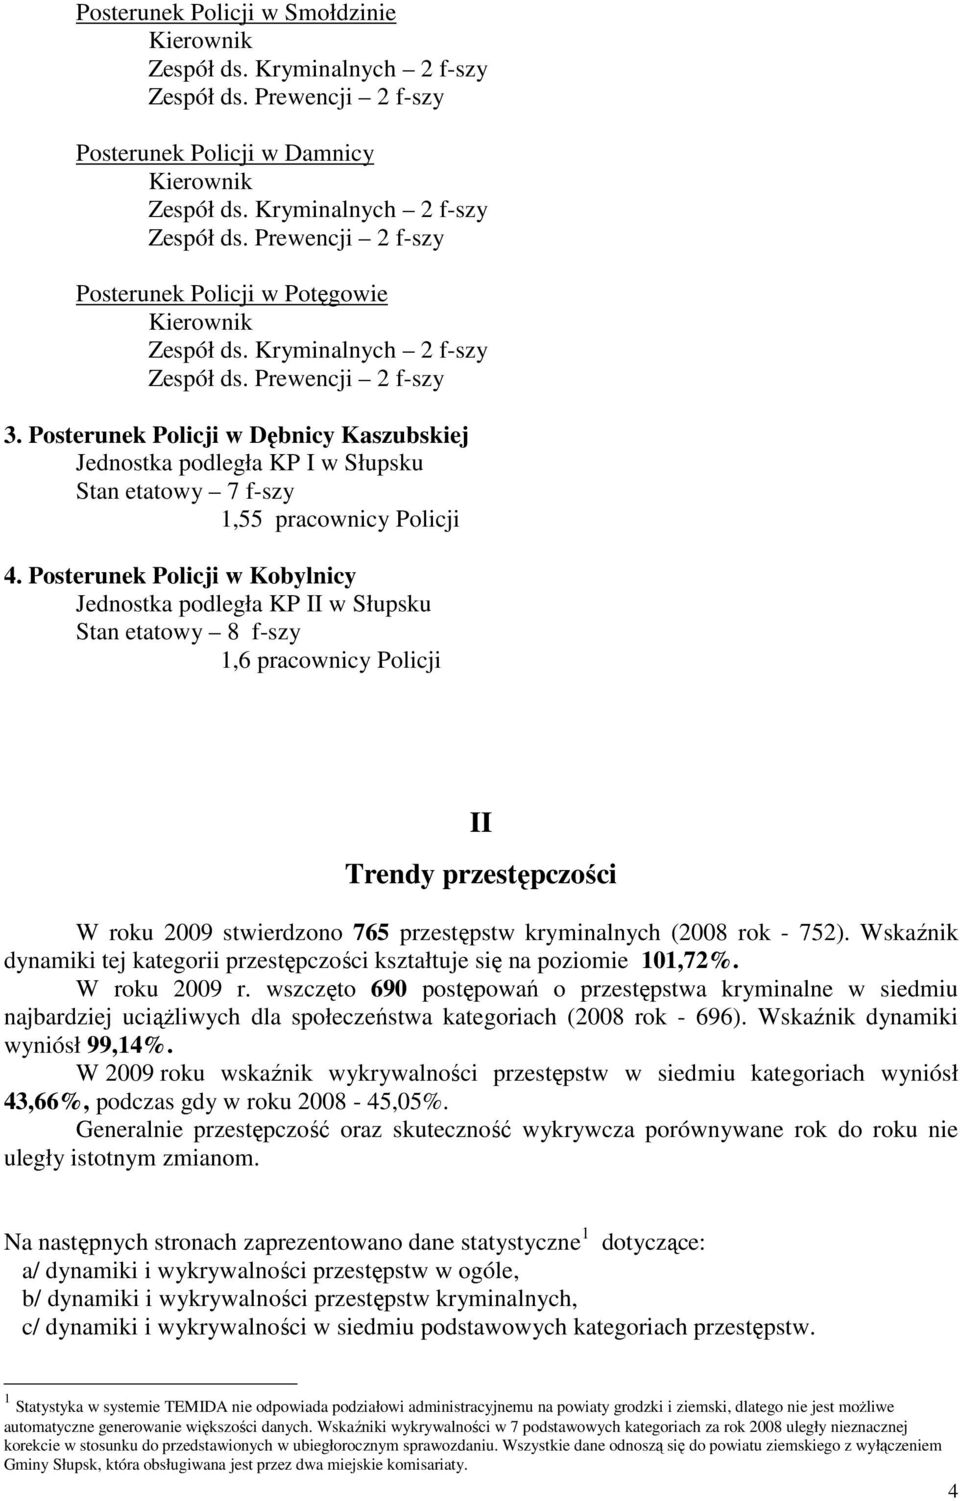 Posterunek Policji w Kobylnicy Jednostka podległa KP II w Słupsku Stan etatowy 8 f-szy 1,6 pracownicy Policji II Trendy przestępczości W roku 2009 stwierdzono 765 przestępstw kryminalnych (2008 rok -